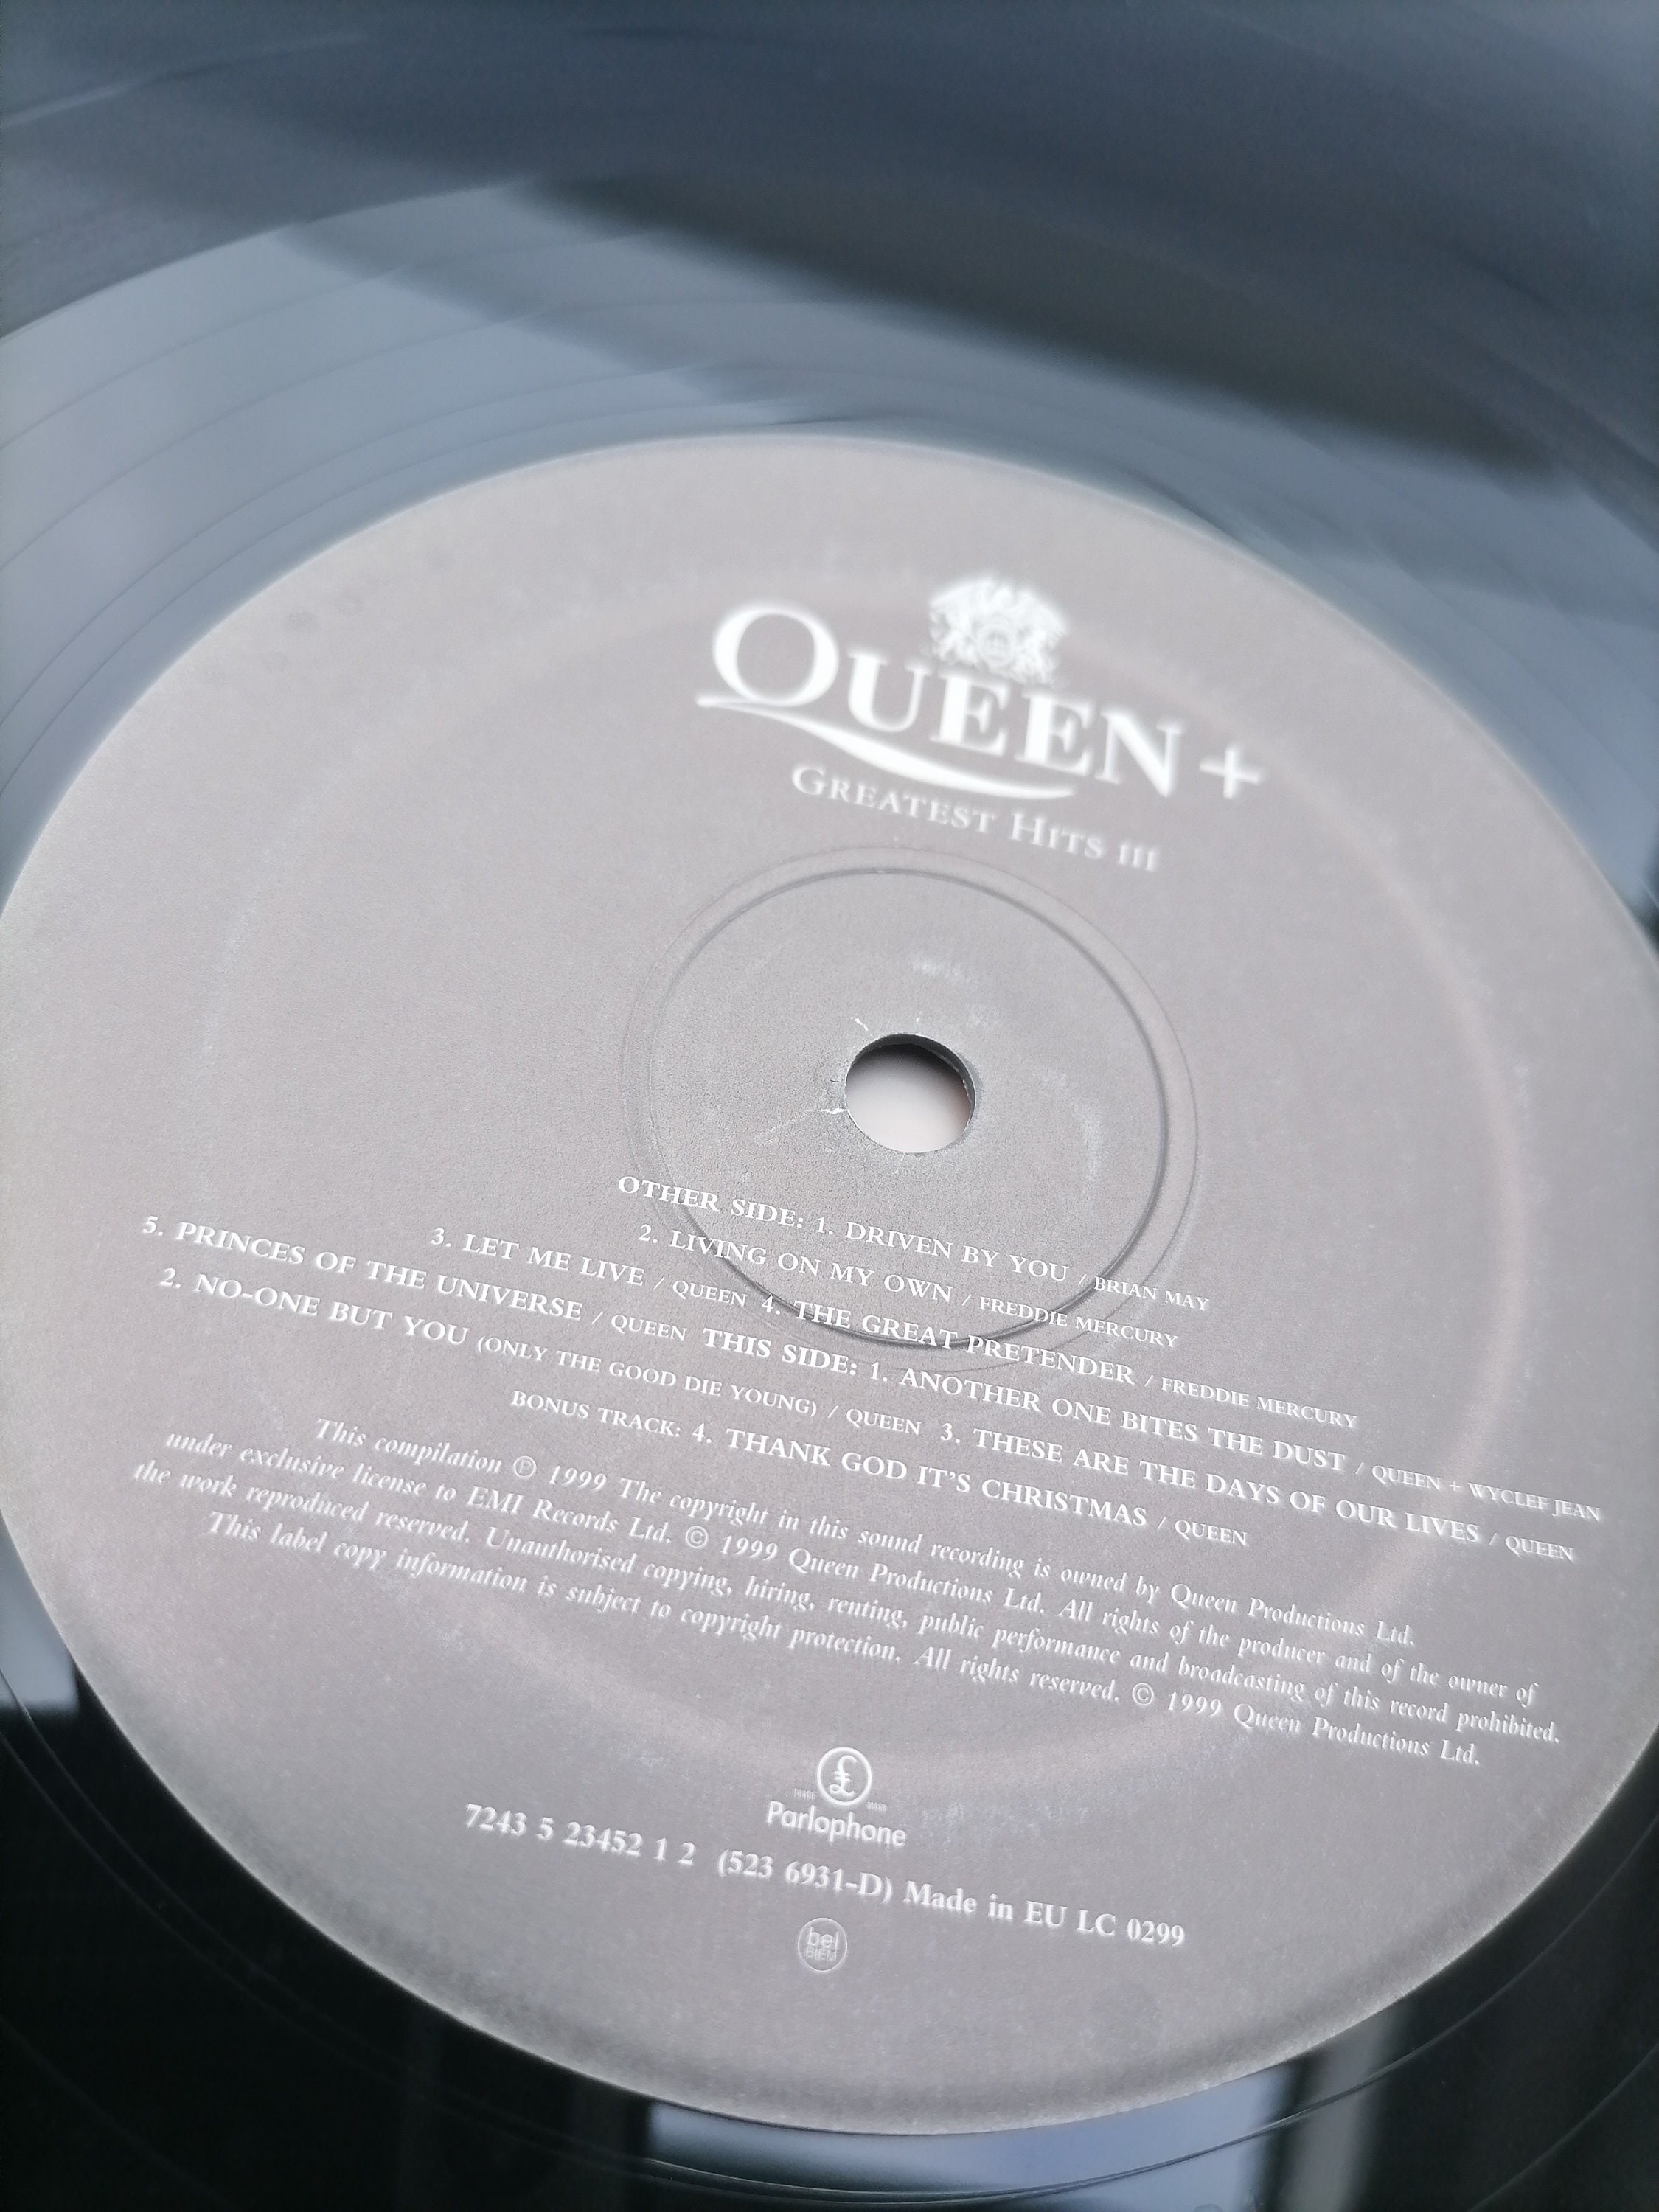 queen-lp greatest hits - Compra venta en todocoleccion